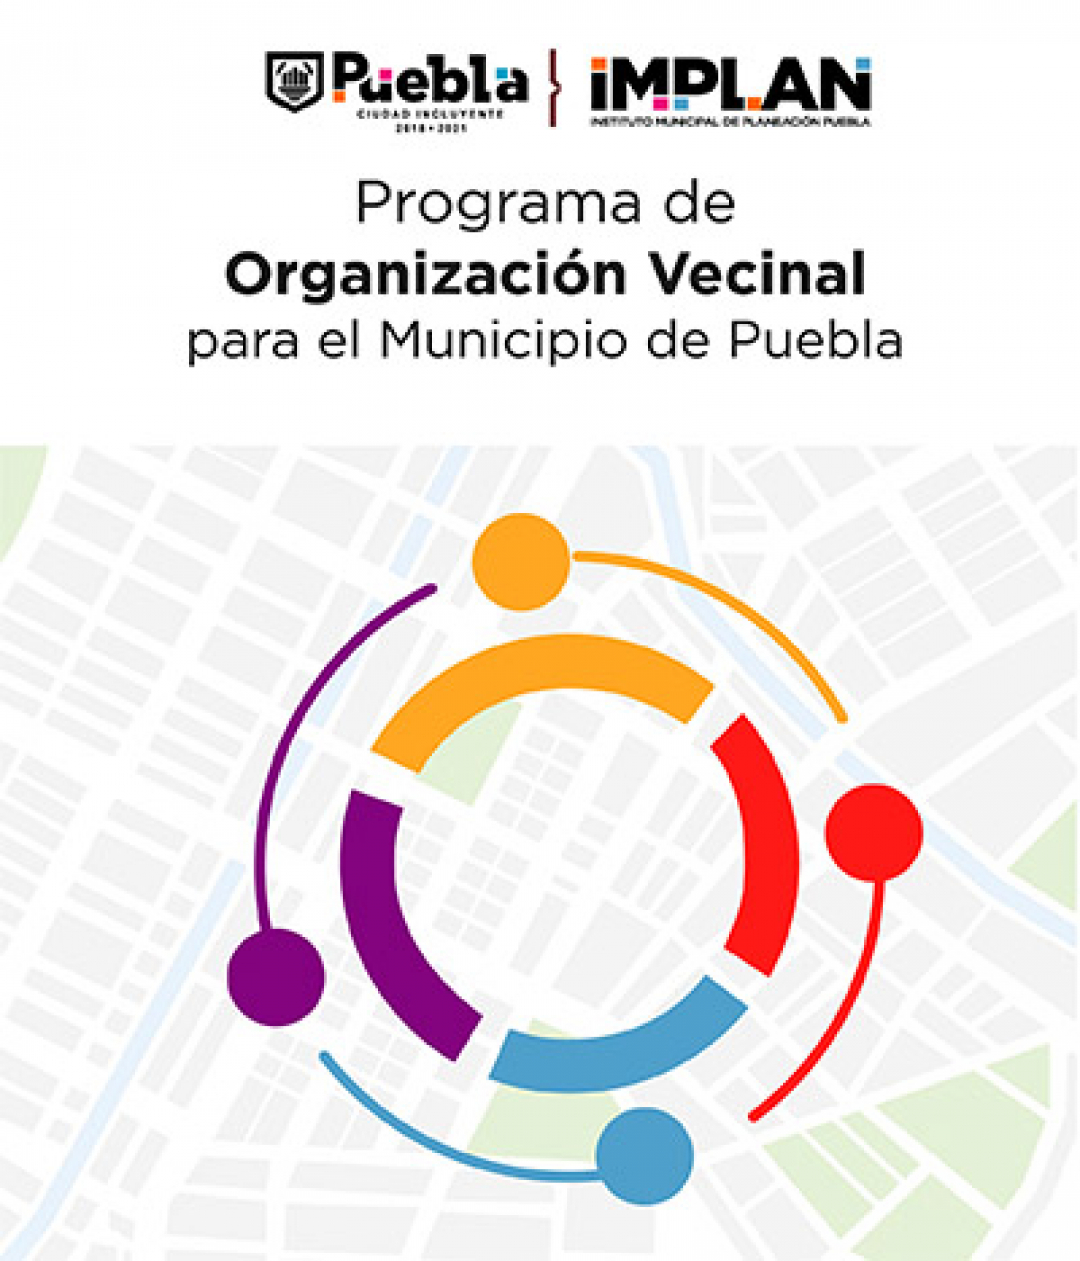 Programa de Organización Vecinal para el Municipio de Puebla